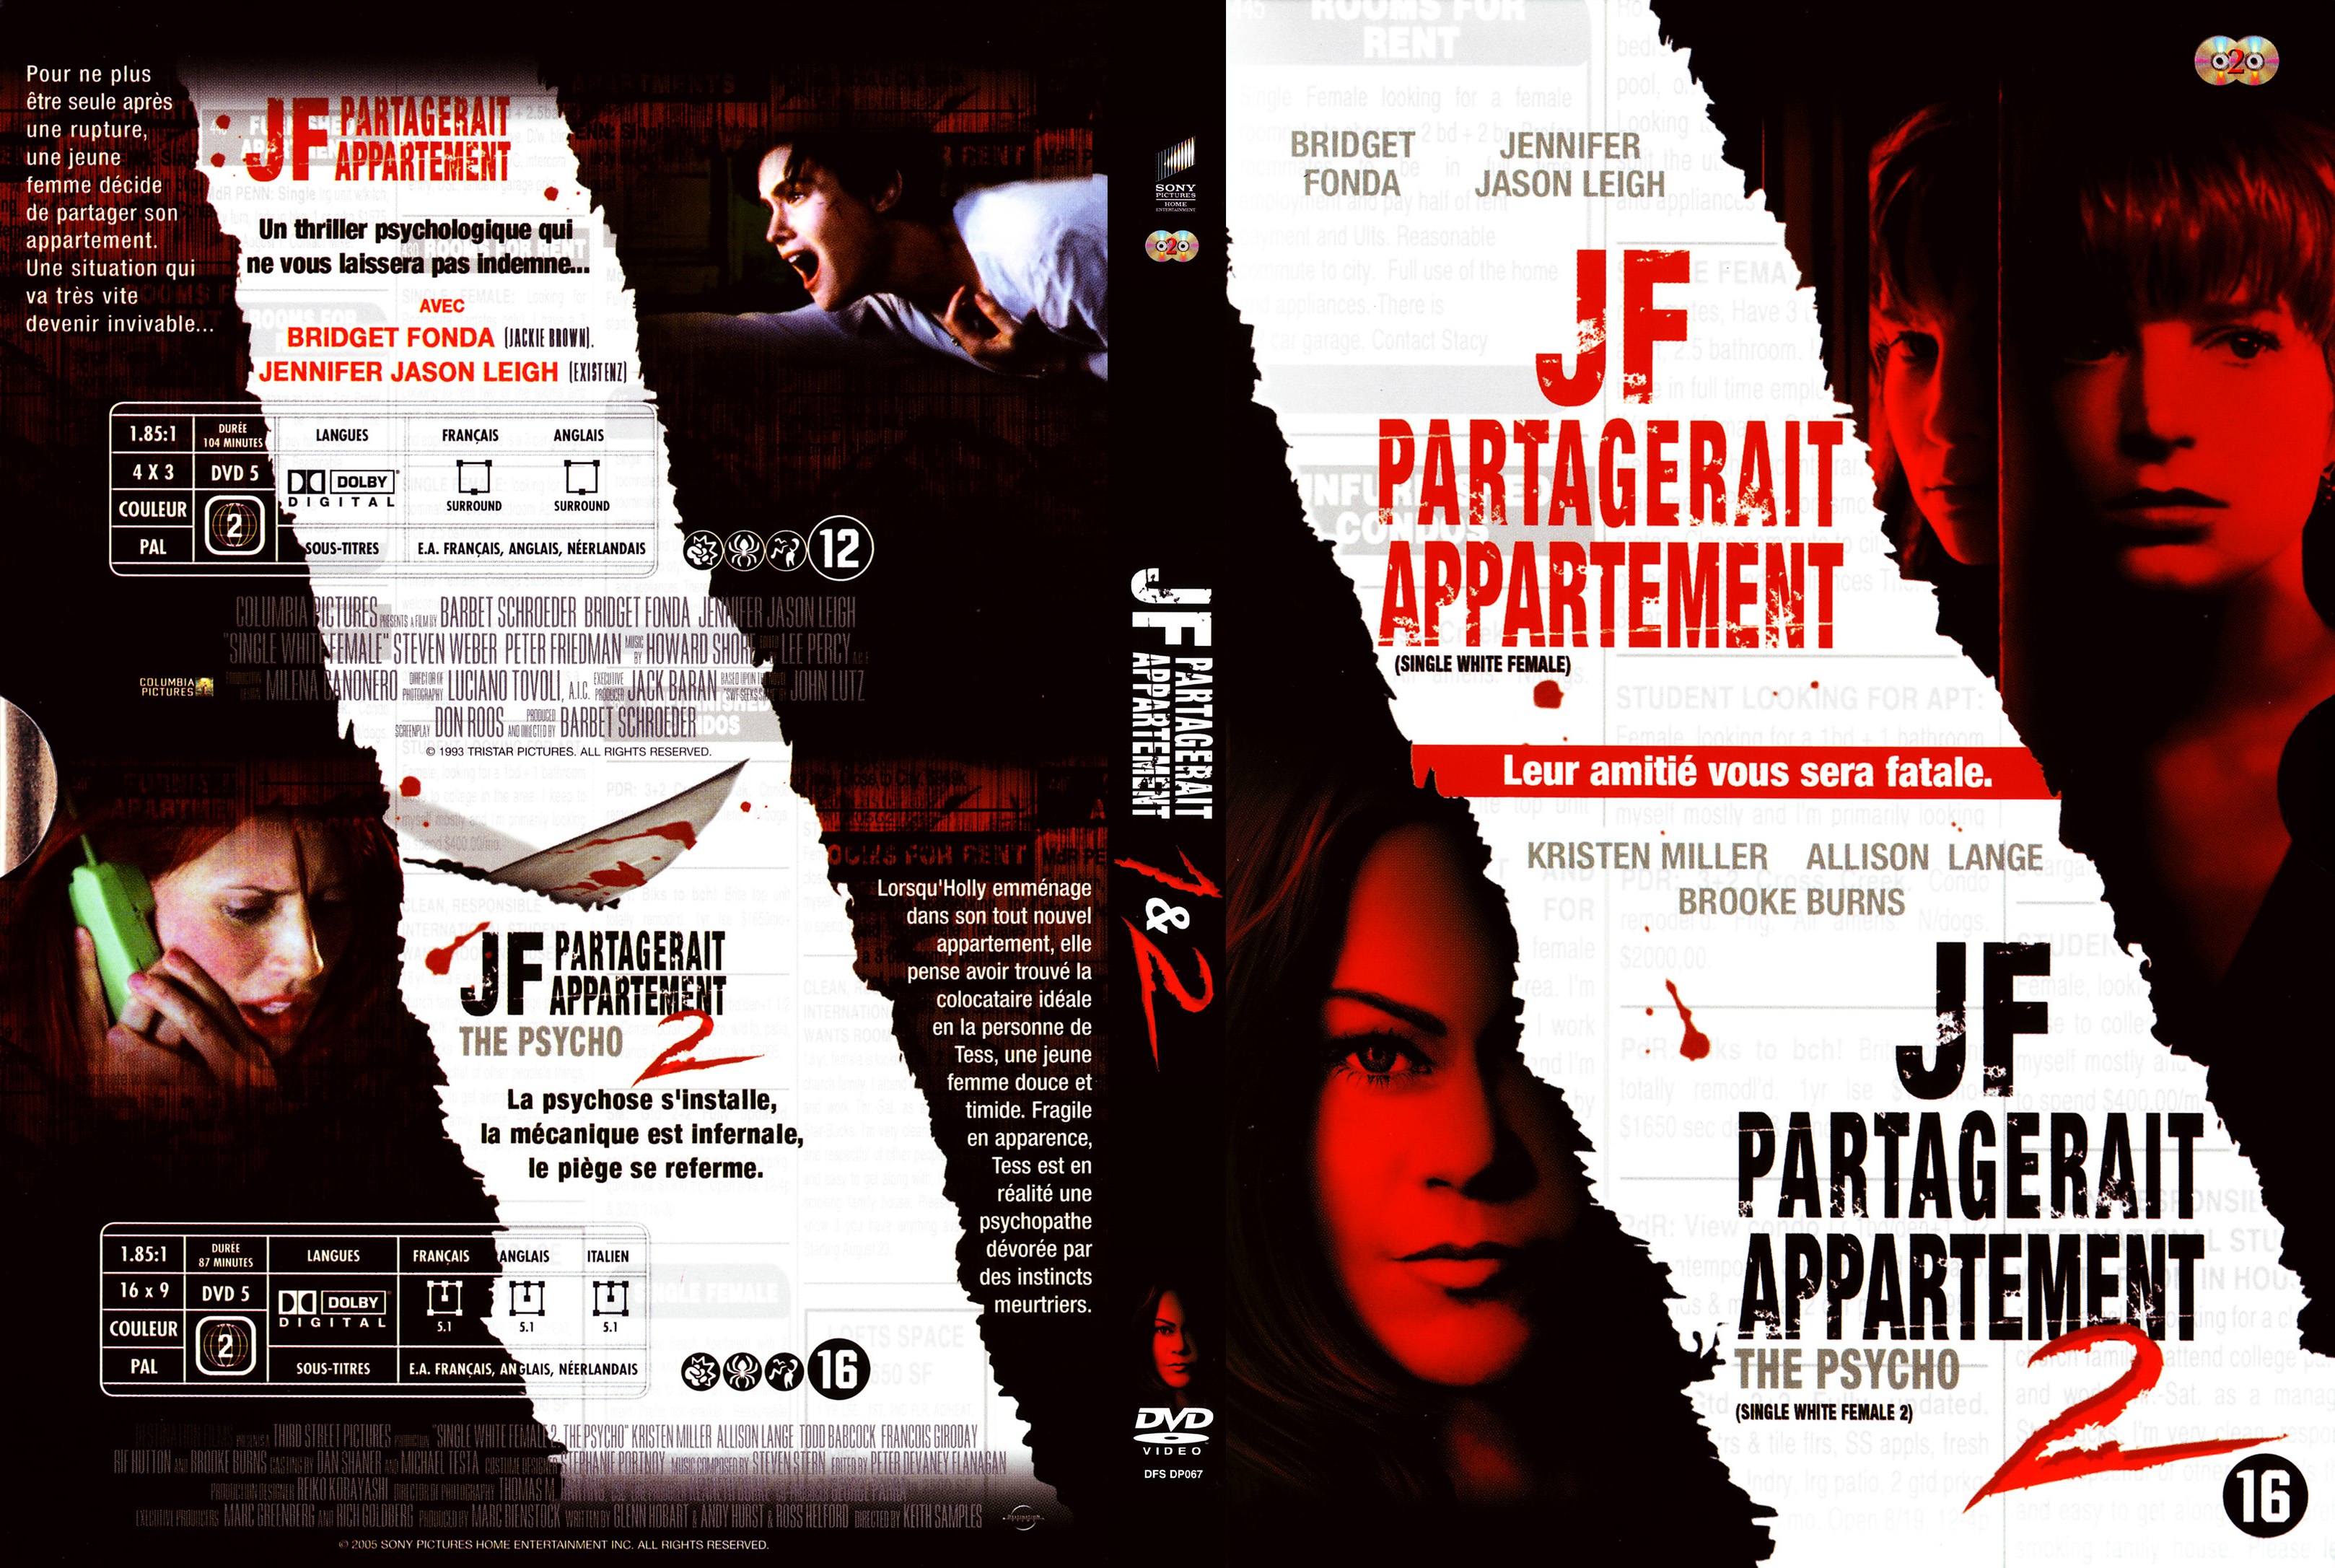 Jaquette DVD JF partagerait appartement 1 et 2